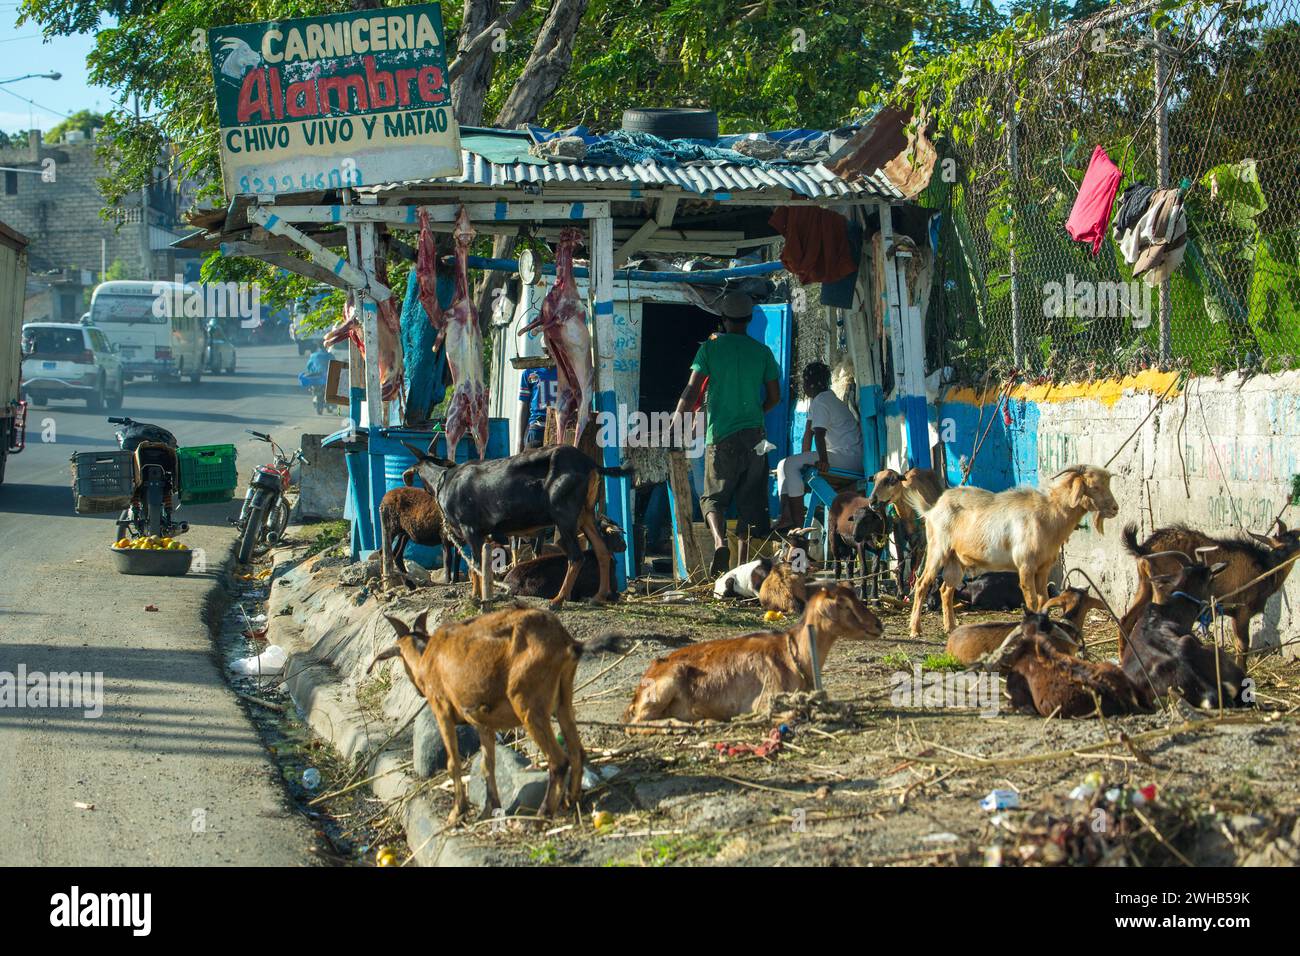 Chèvres en attente d'être massacrées et enchaînées pour la vente sur un bord de route en République dominicaine. Des carcasses bouchées peuvent être vues suspendues dans le backgro Banque D'Images